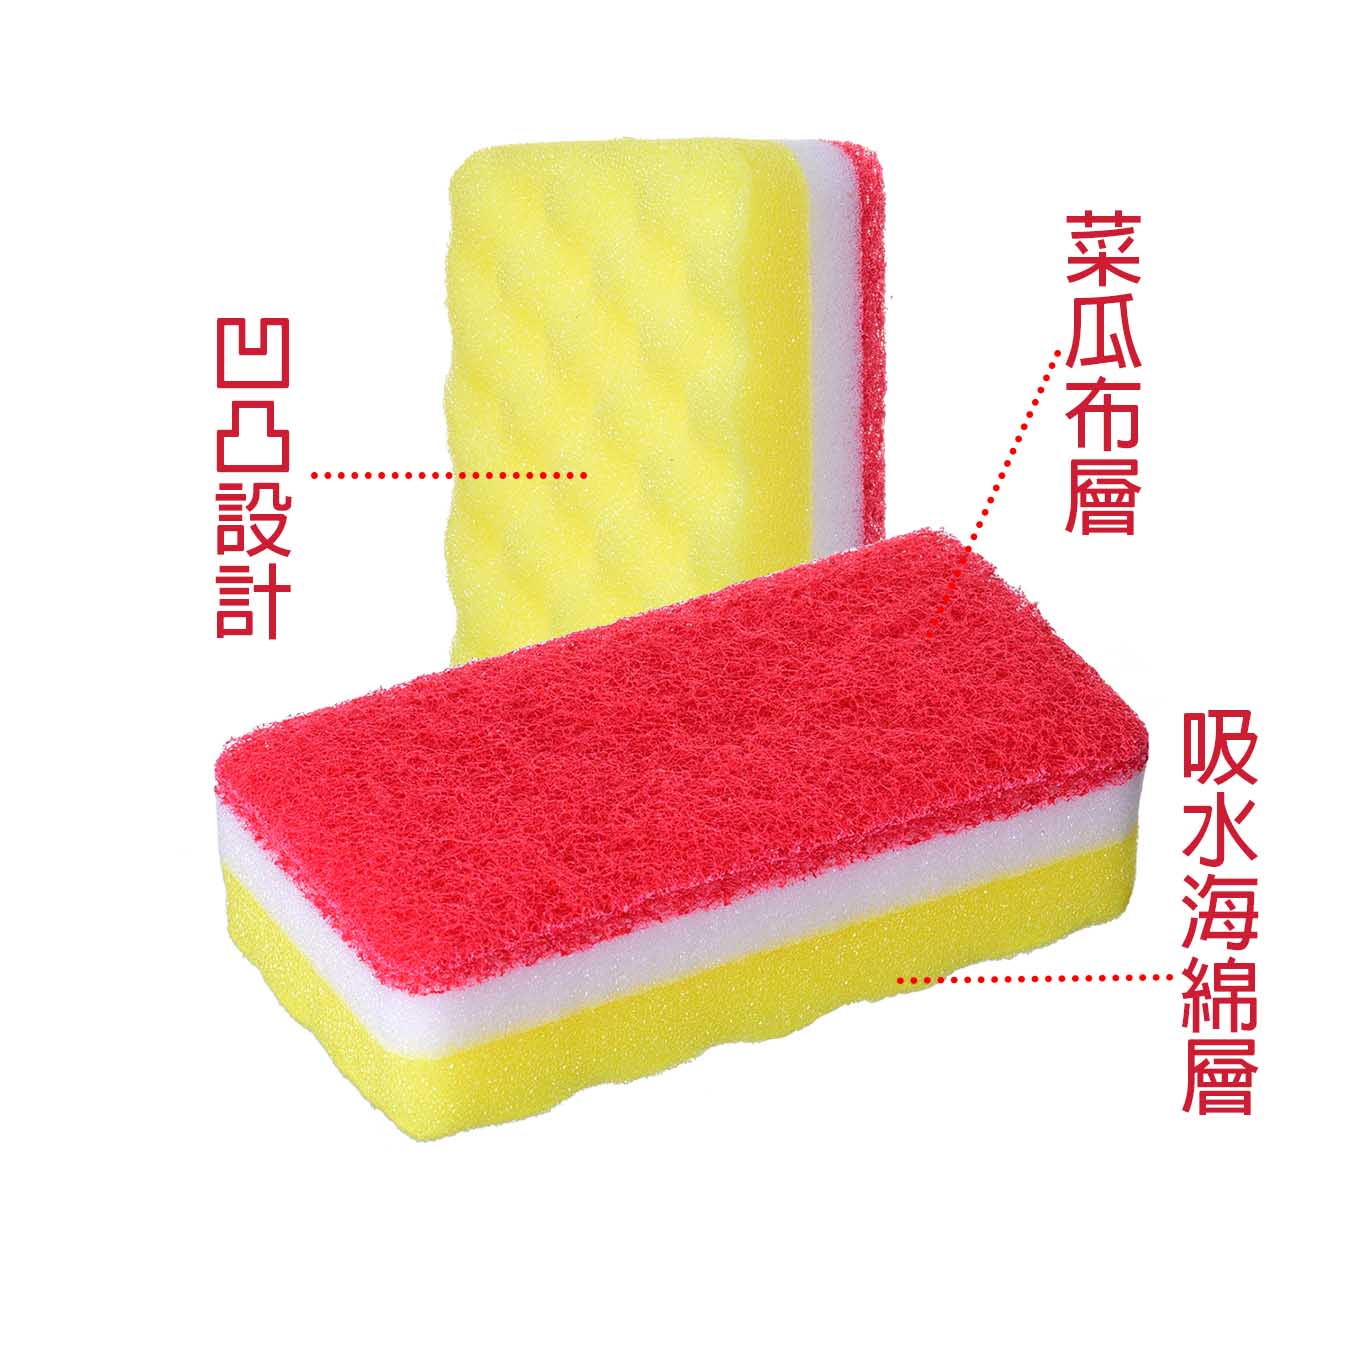 SEIWA-PRO日本耐久力廚用海綿